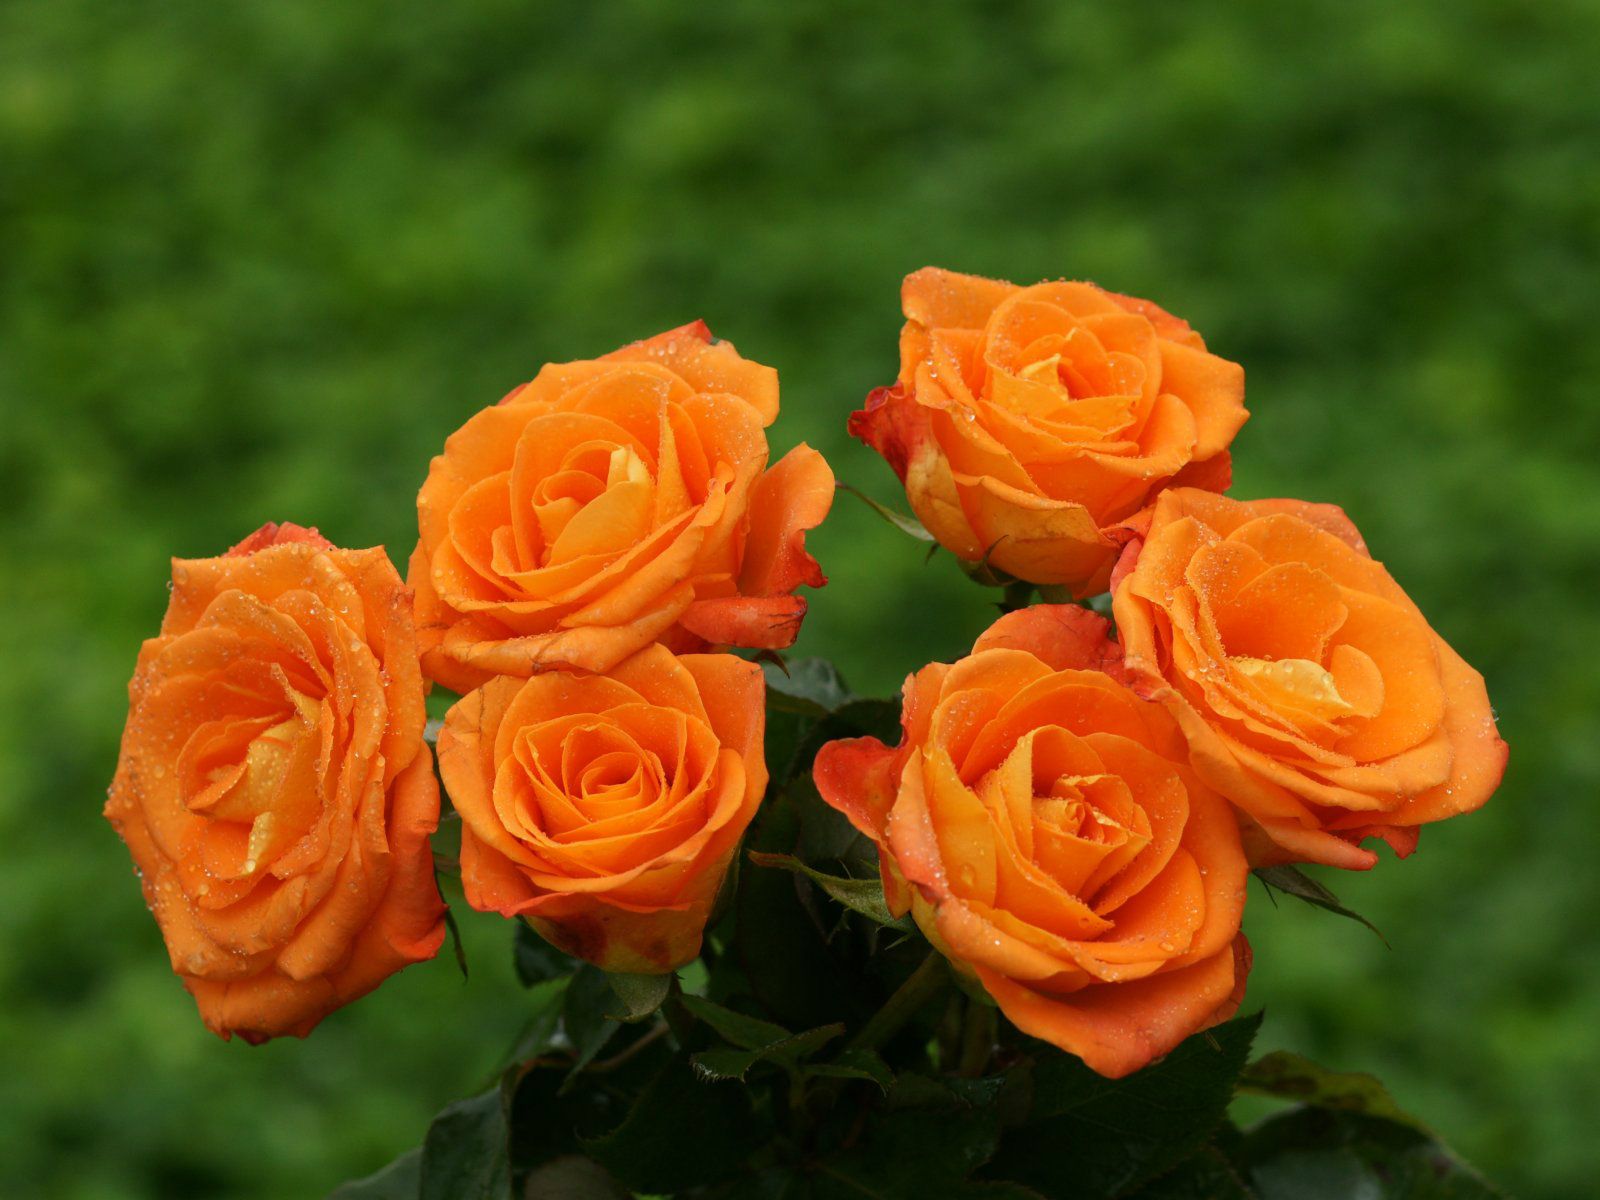 Hoa hồng cam là một trong những loài hoa đẹp và quyến rũ nhất trong giới hoa hồng. Hãy xem hình ảnh liên quan để khám phá những đường nét tinh tế, màu sắc rực rỡ và hương thơm quyến rũ của loài hoa này.